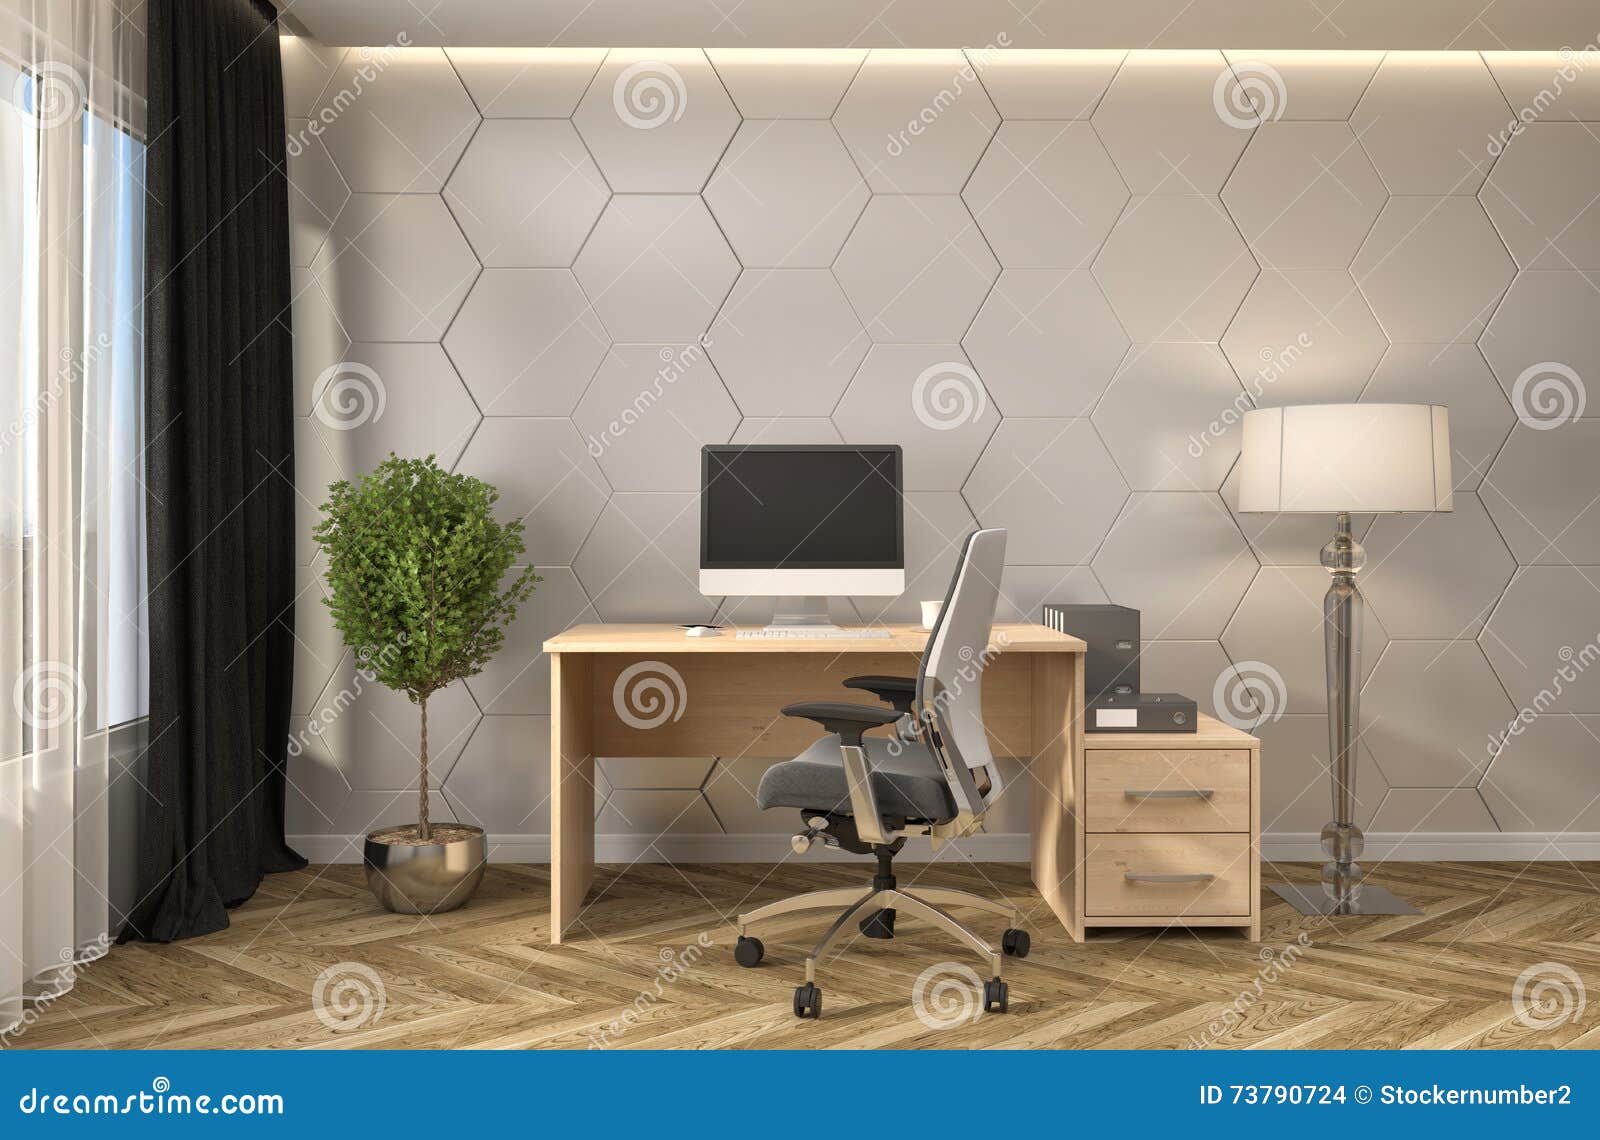 office interior d illustration job 73790724